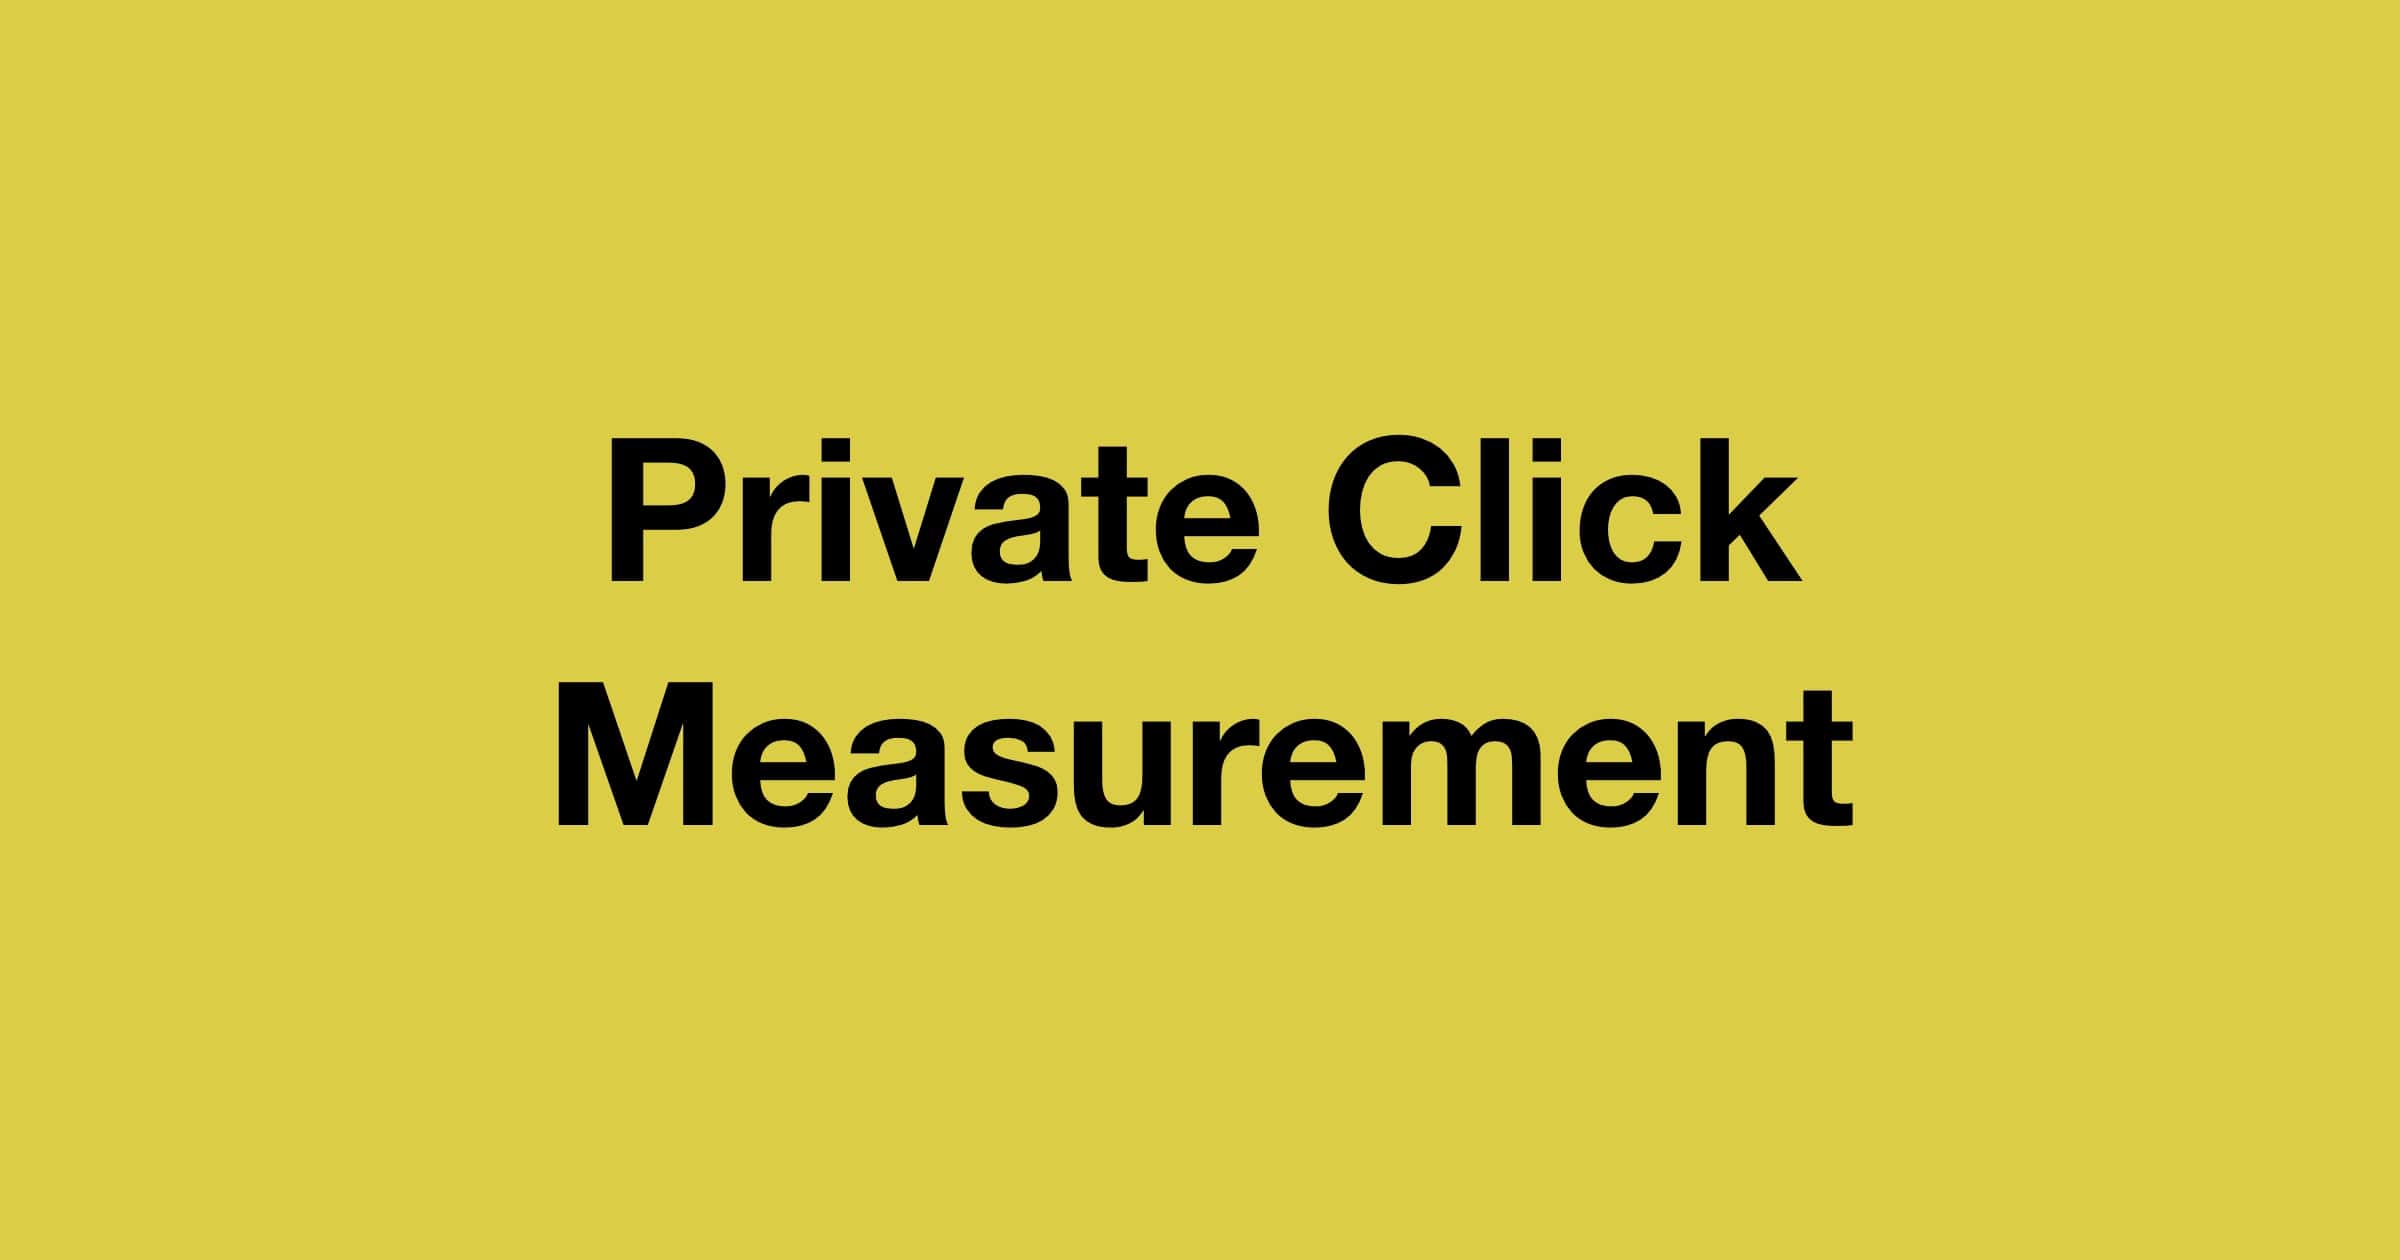 Private click measurement